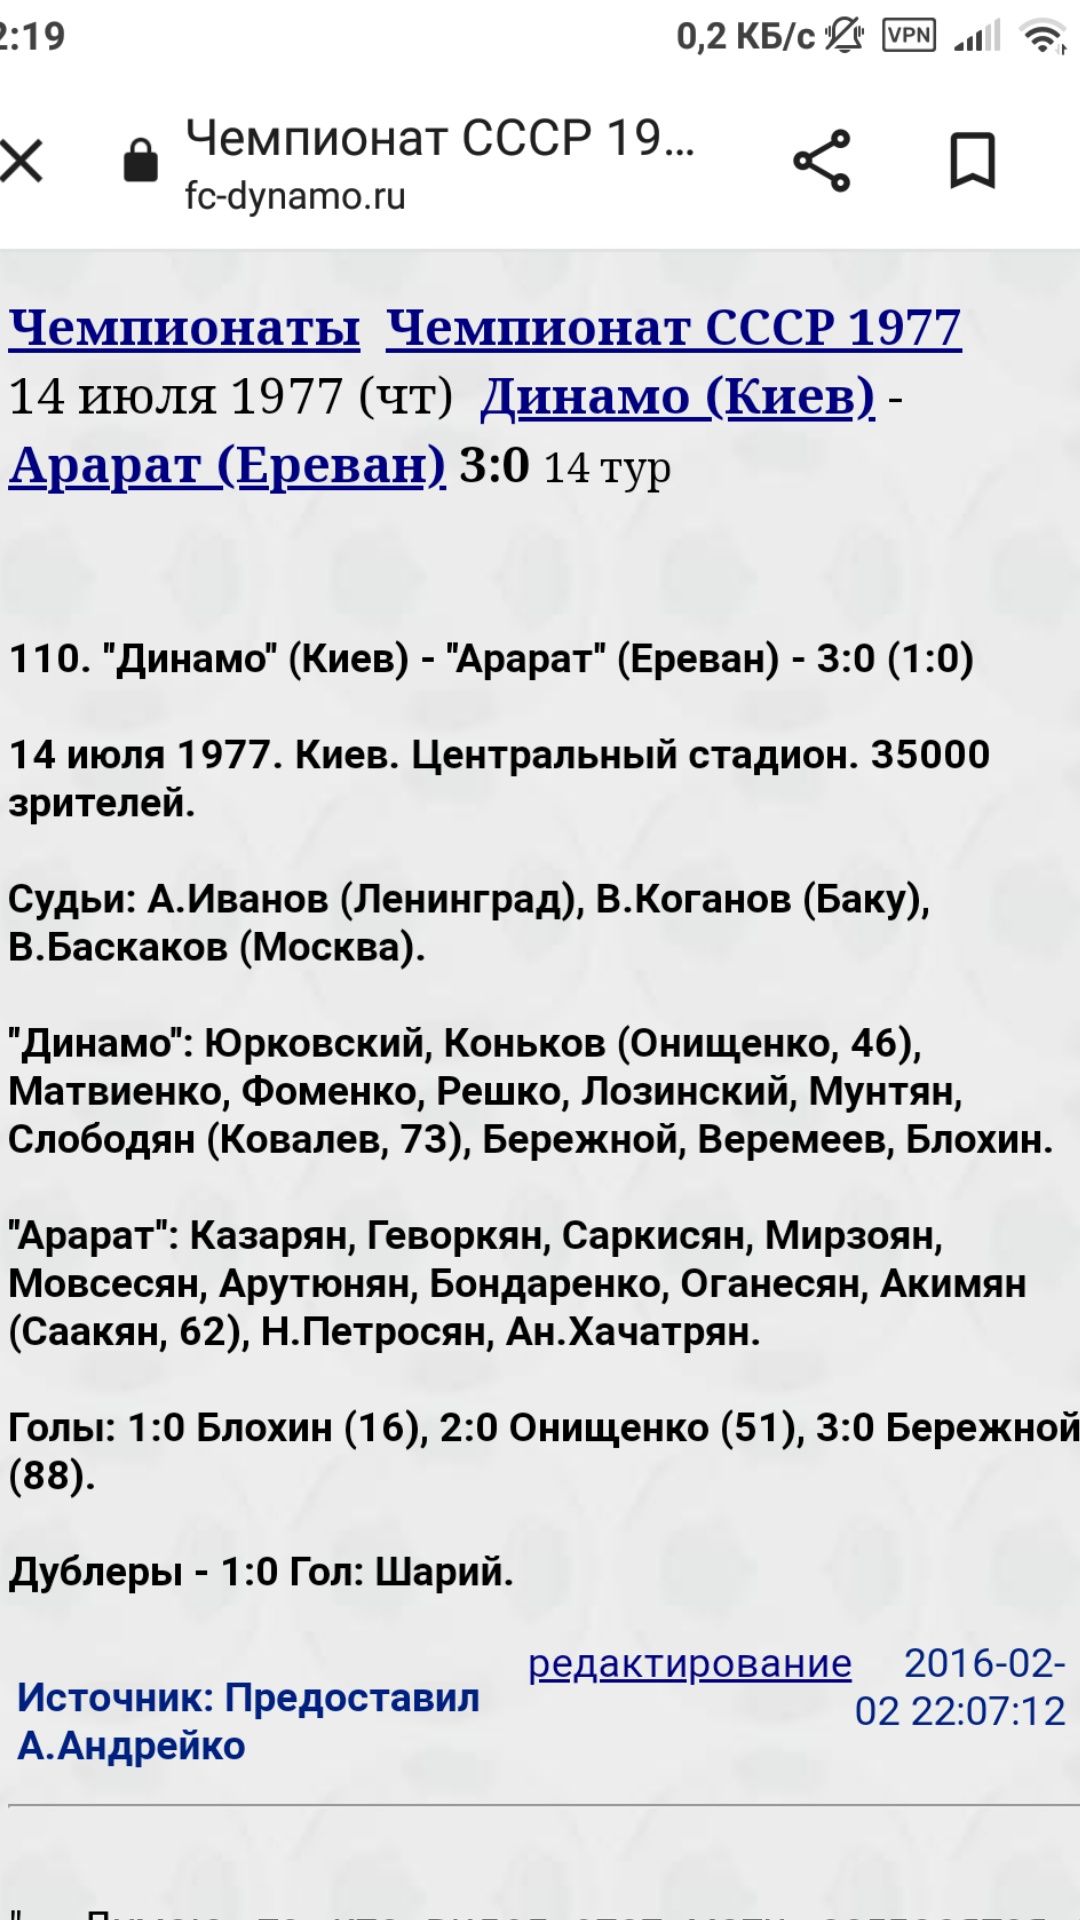 Билет на футбольный матч Динамо Киев - Арарат Ереван 14.07.77 год